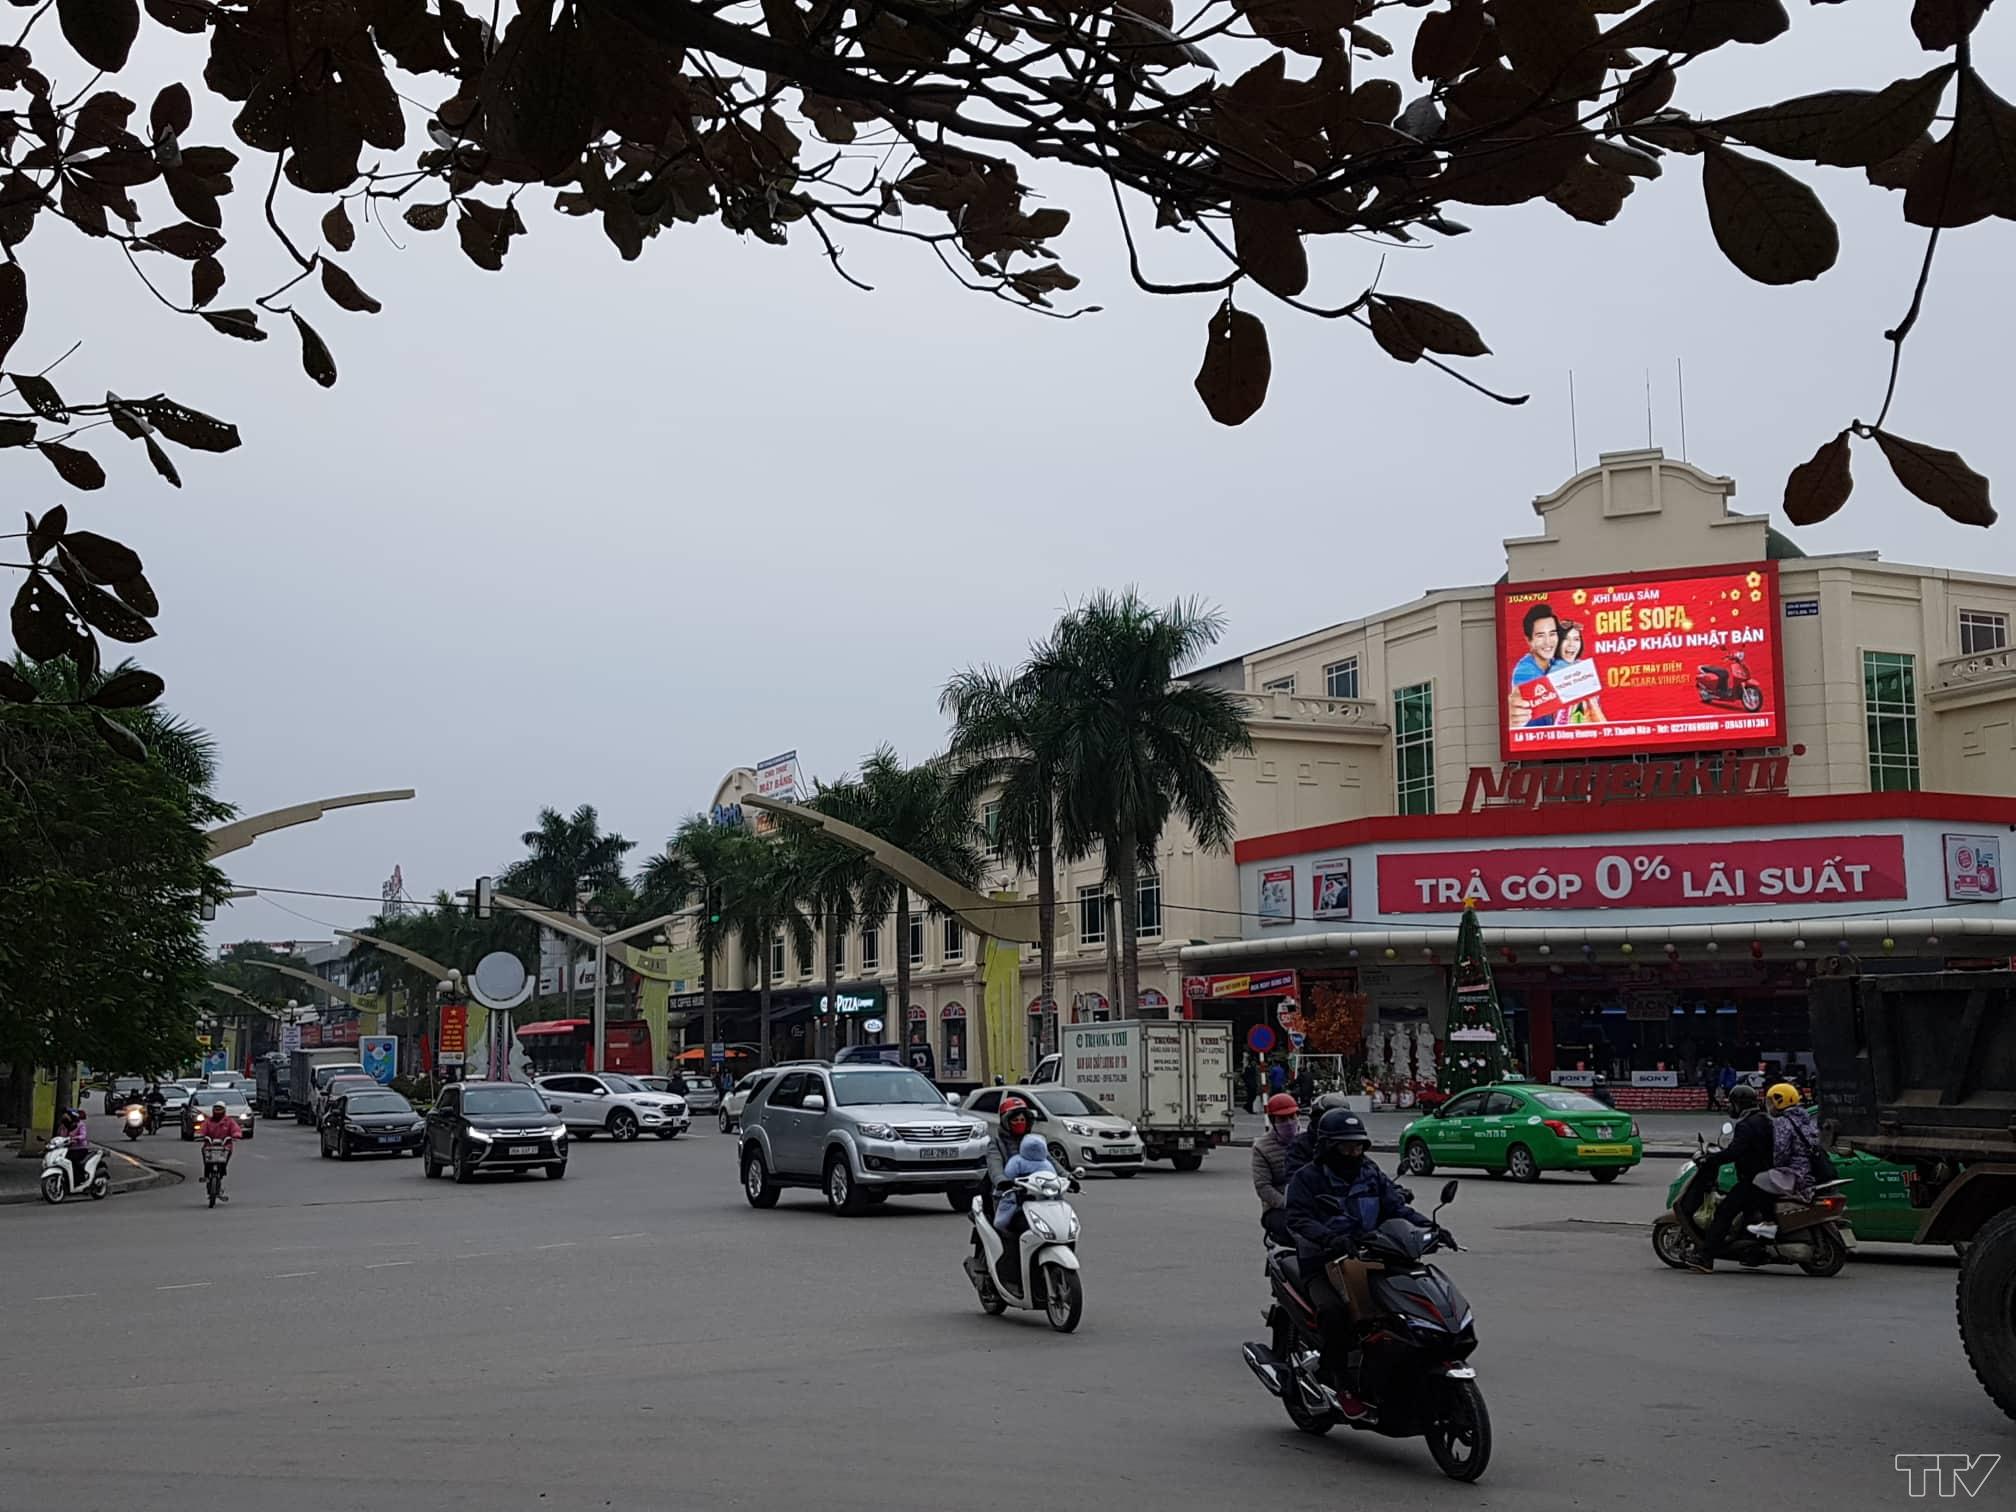 Đoạn đường ngã tư Bưu điện, thành phố Thanh Hóa  dù phương tiện lưu thông rất đông